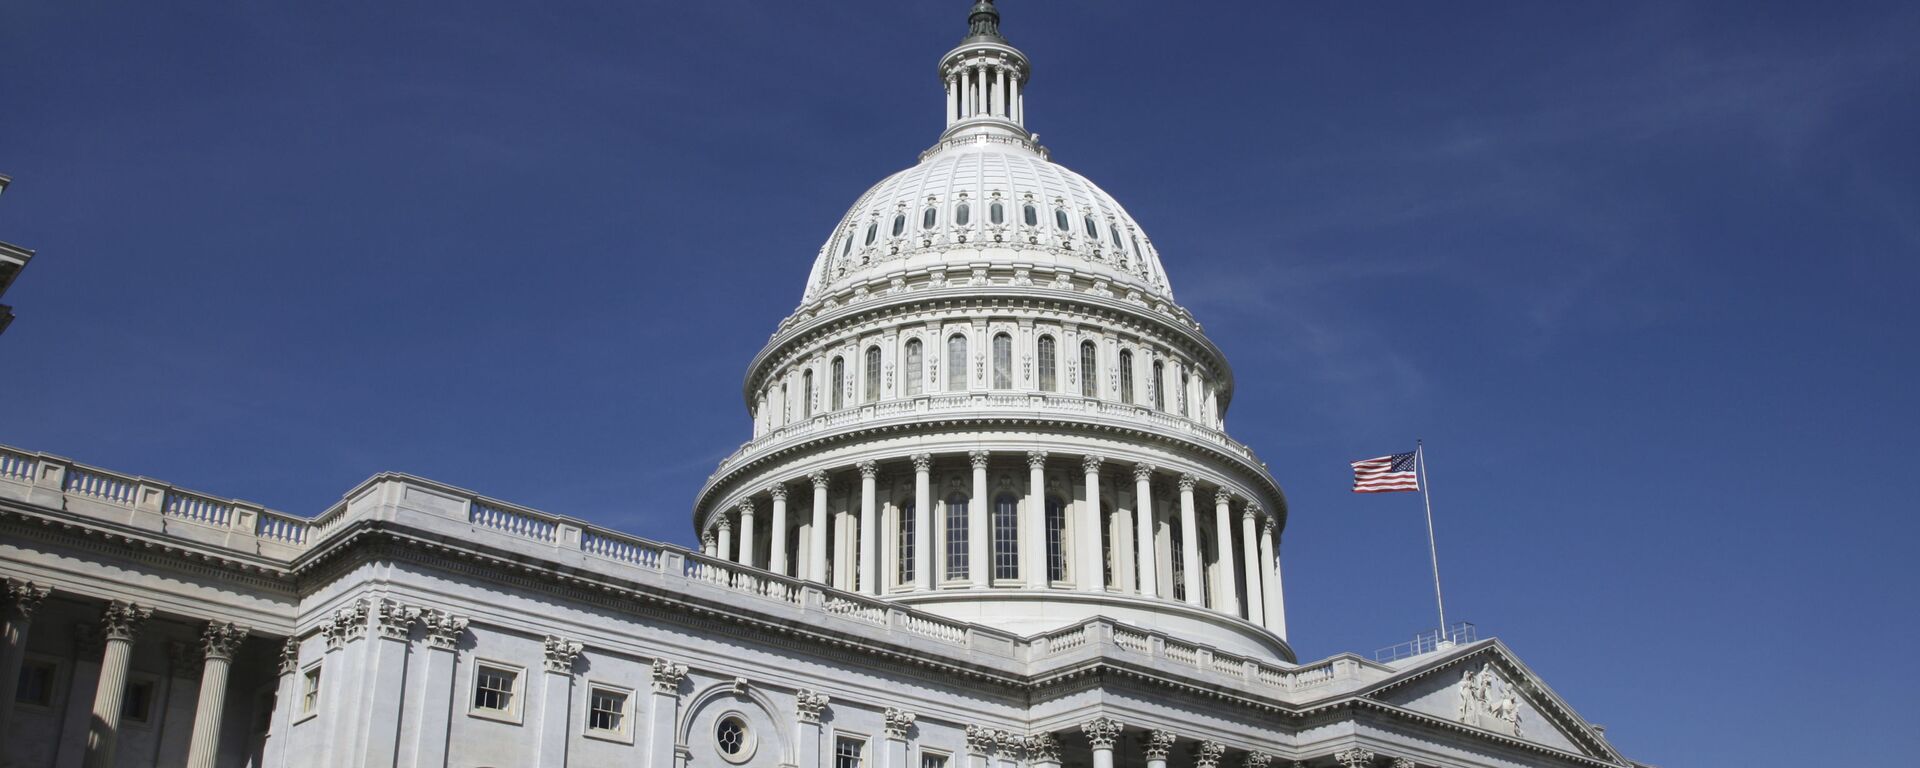 Купол Капитолия - здание конгресса США в Вашингтоне, архивное фото - Sputnik Lietuva, 1920, 23.08.2019